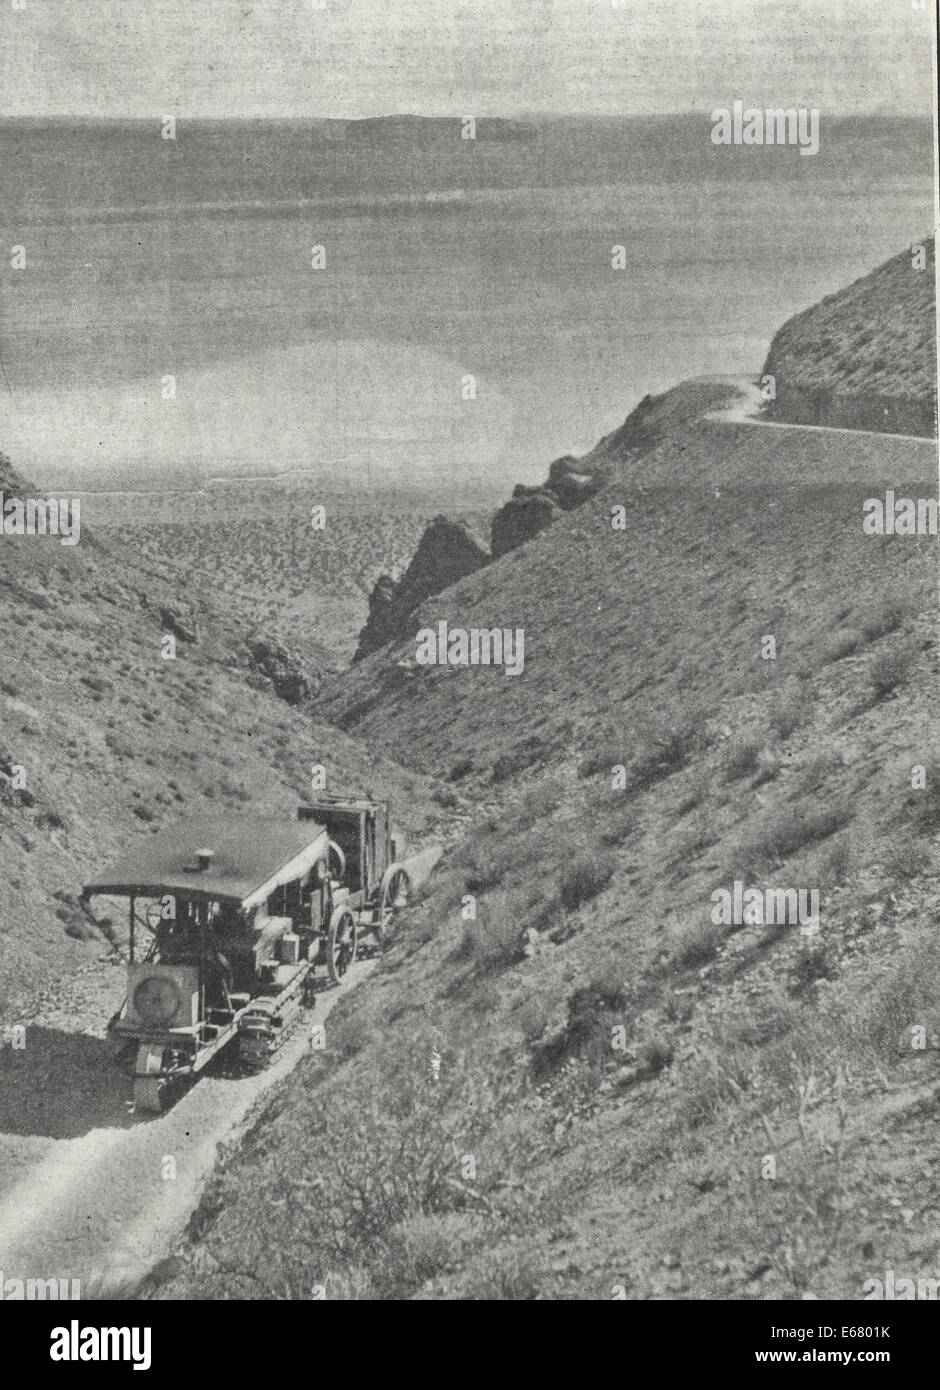 Caterpillar benzina motore trazione alaggio macchinari elettrici vicino al Deserto Mojave, circa 1909 Foto Stock